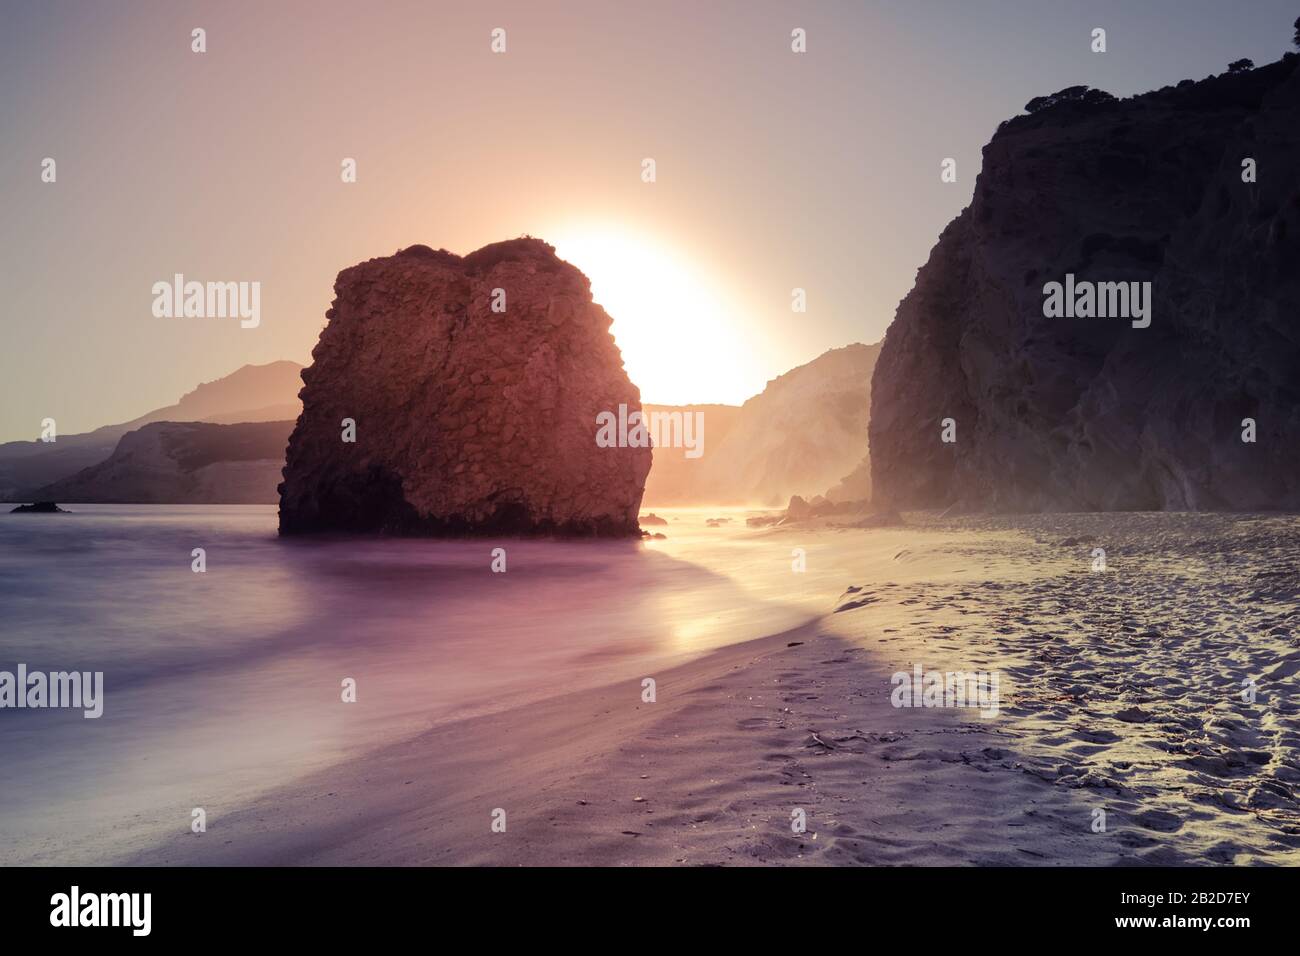 Fantastischer Sonnenuntergang auf der Insel Milos. Sandiger Strand und sanfte Meeresbrandung in der ägeischen Meere. Große Steinfelsen im Wasser. Ruhiger Abend mediterrane Landschaft auf den Kykladen I Stockfoto